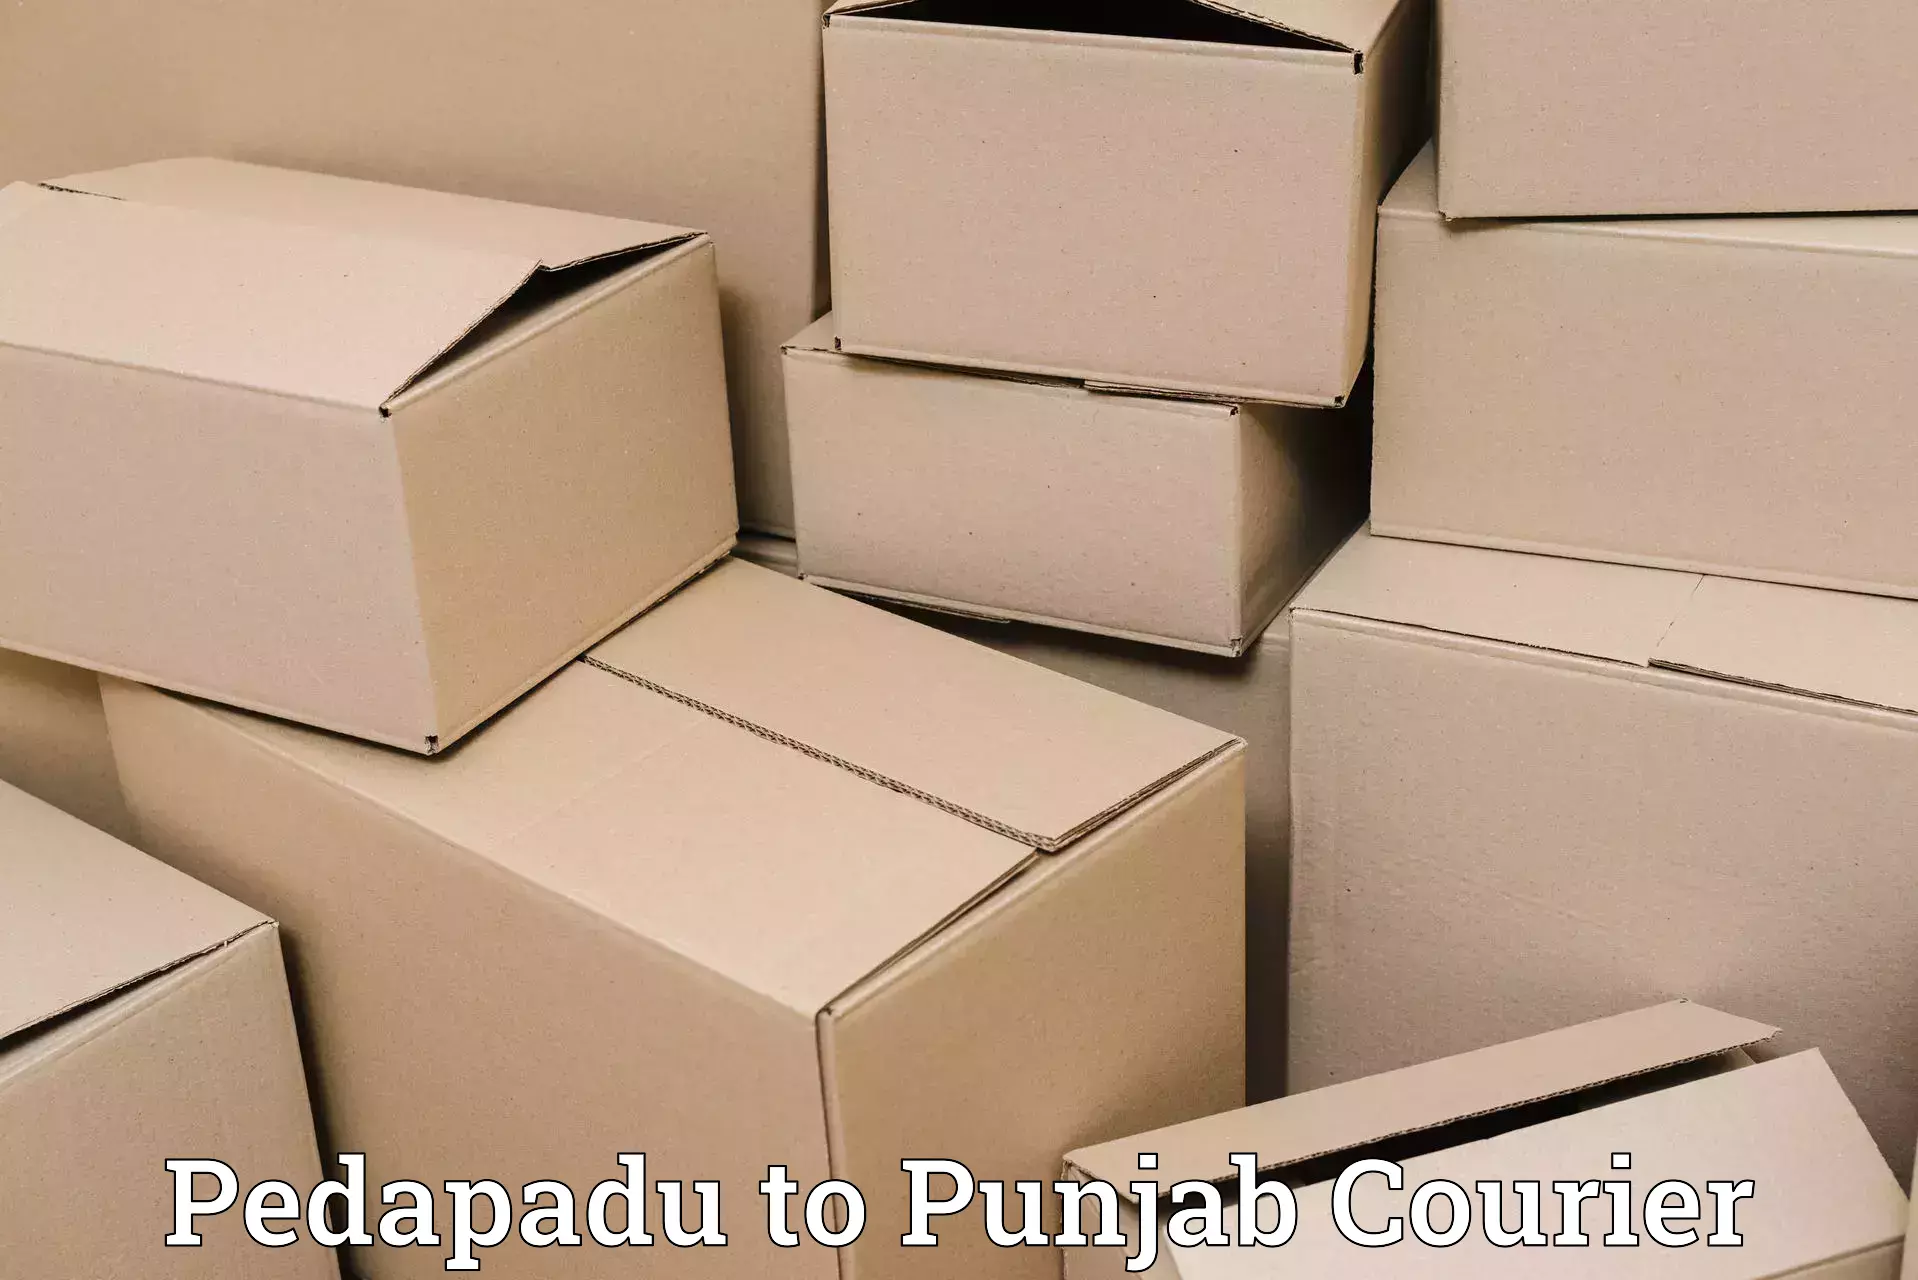 Digital courier platforms Pedapadu to Jalalabad